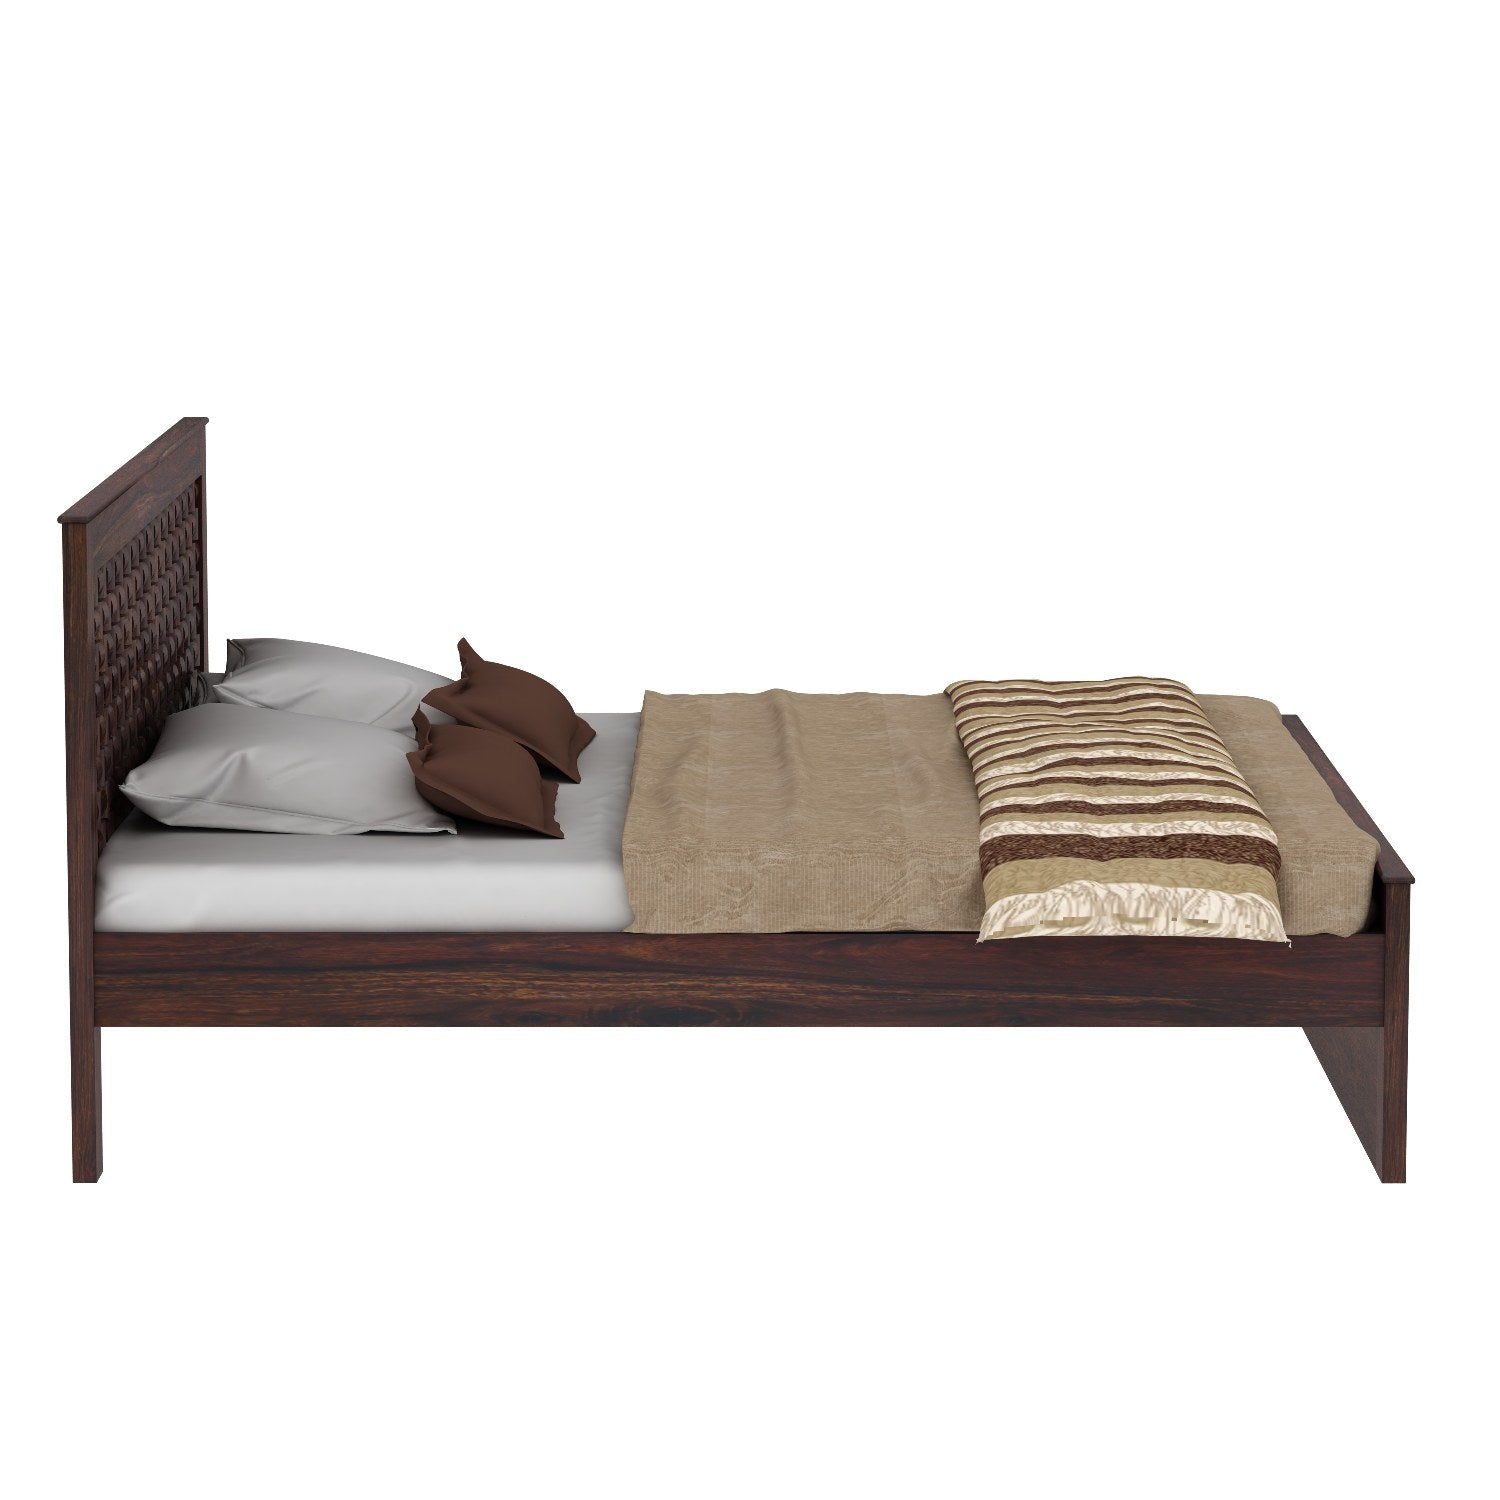 Olivia Solid Sheesham Wood Bed Without Storage (King Size, Walnut Finish)